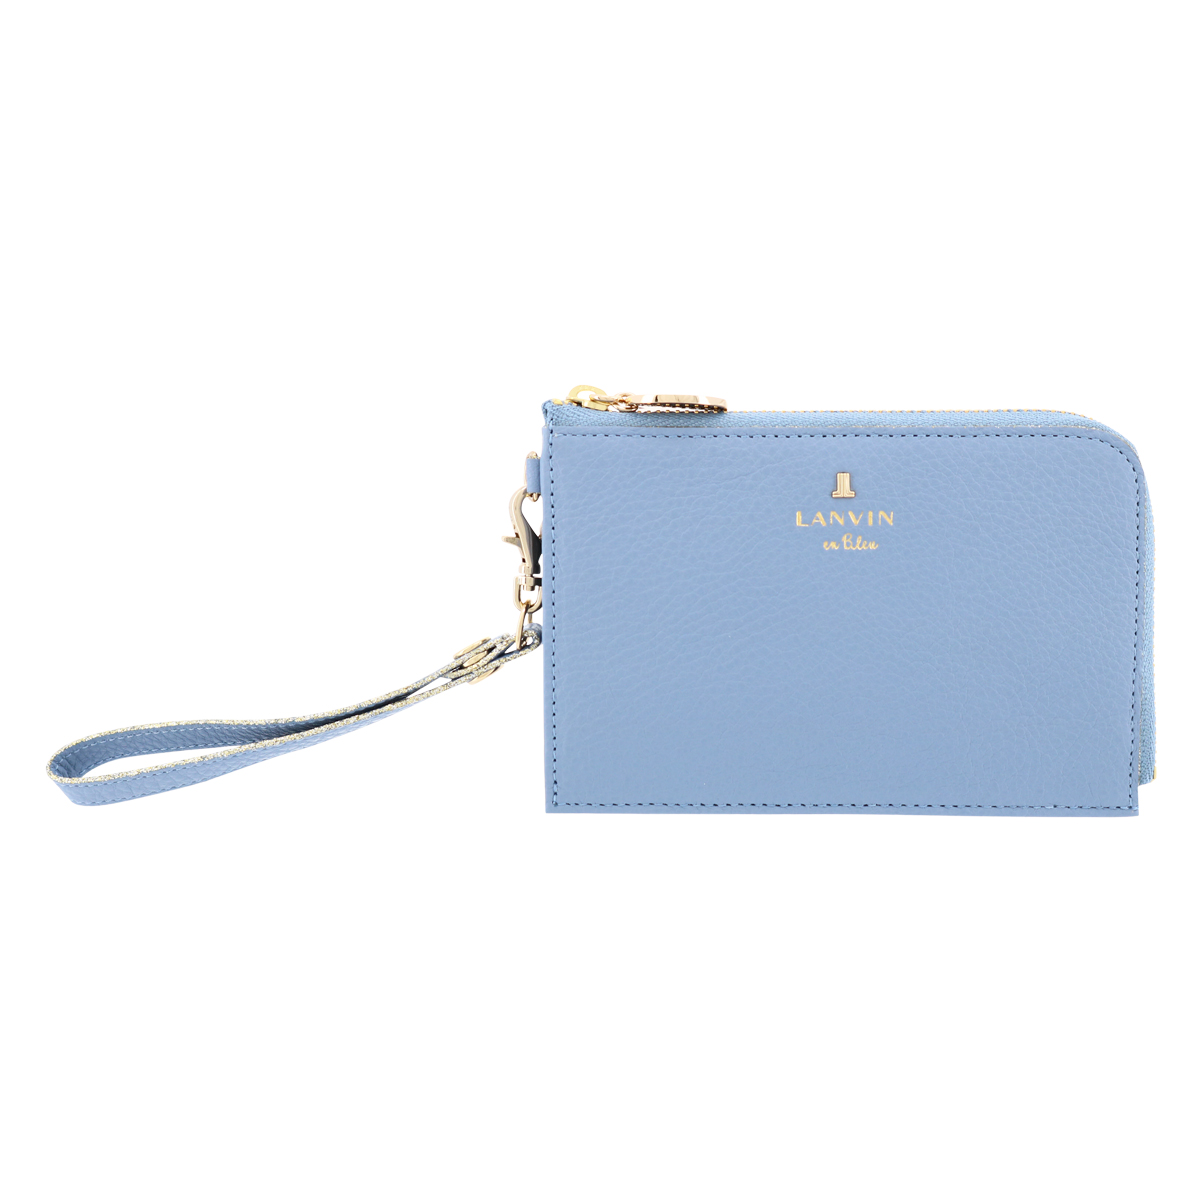 ランバンオンブルー 財布 薄型 薄マチ キーチェーン付き 本革 ラニー レディース 483224 LANVIN en Bleu カードケース  フラグメントケース